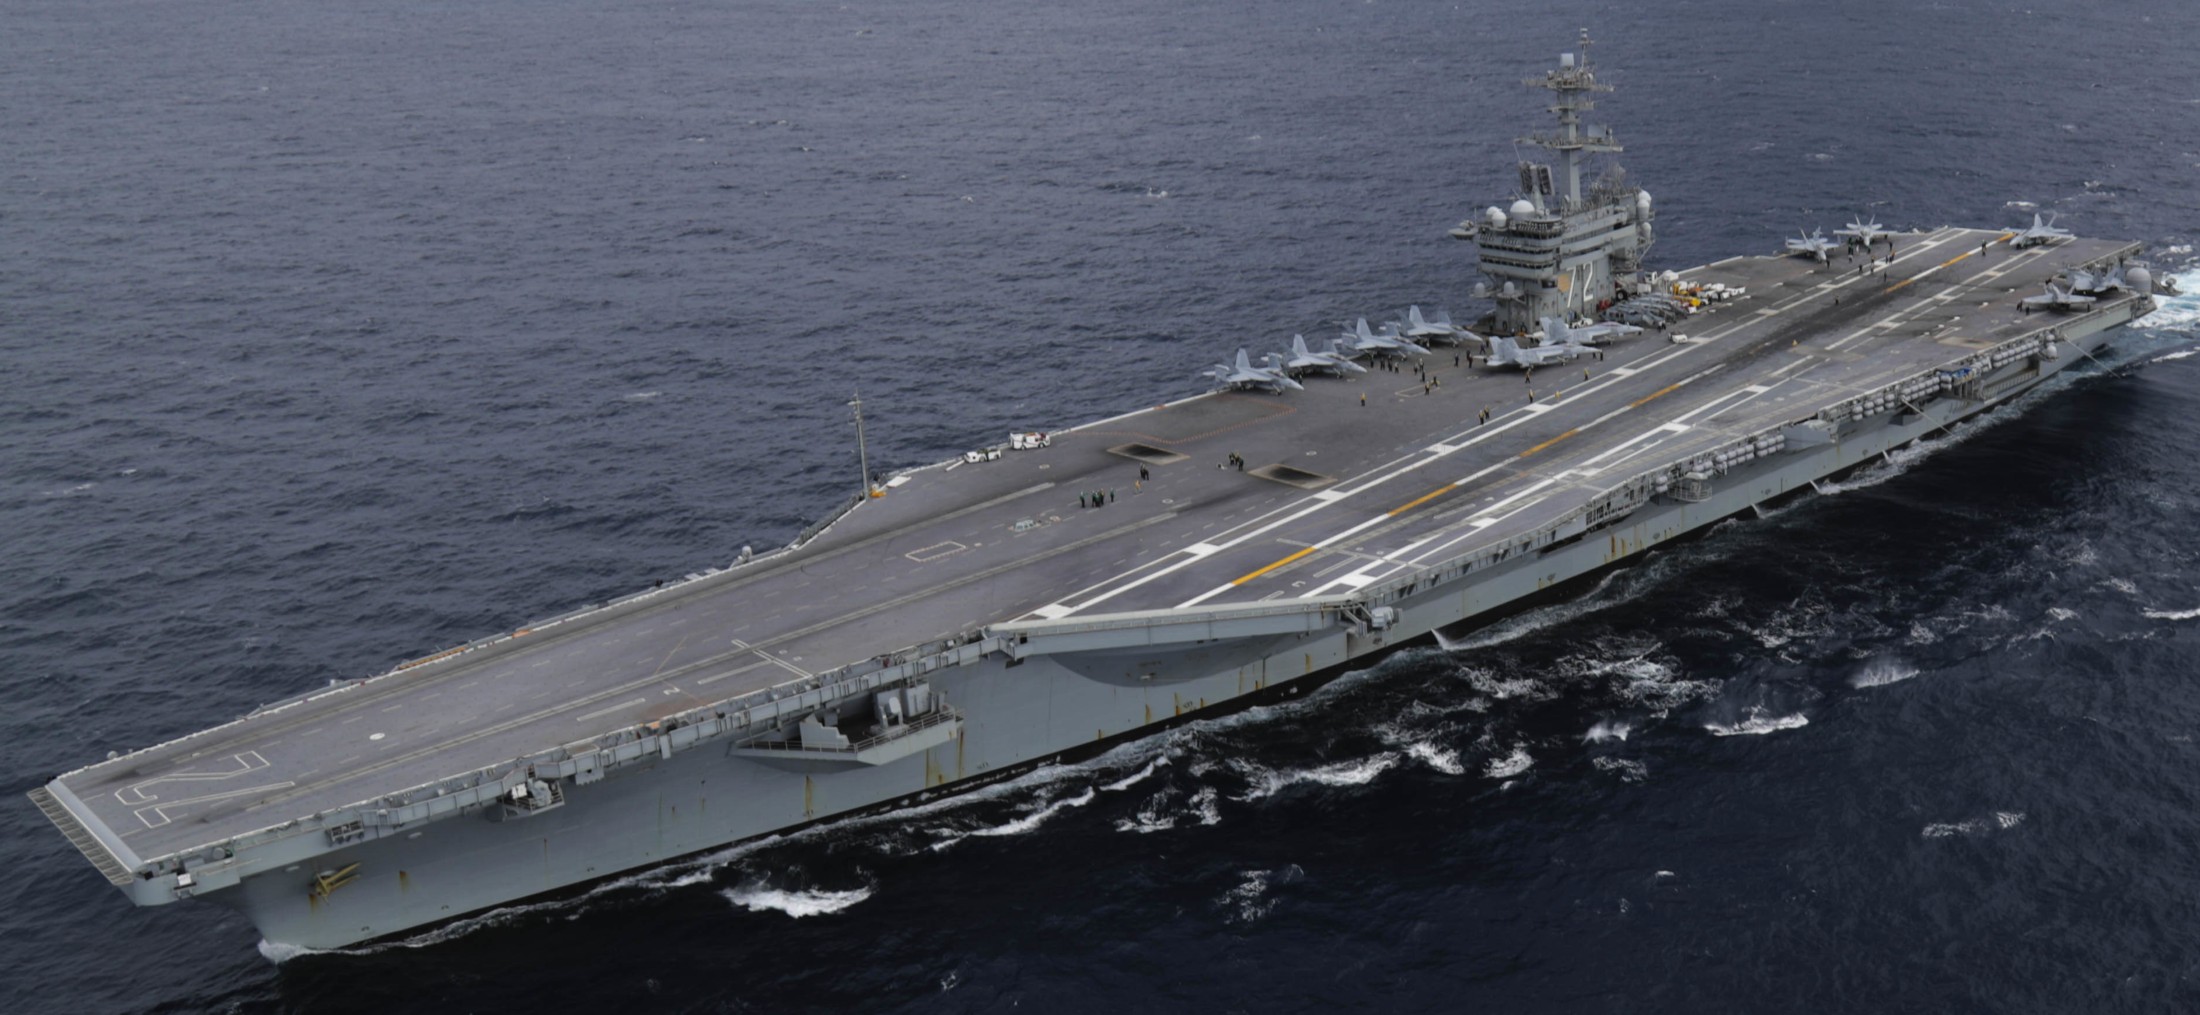 cvn-72 uss abraham lincoln nimitz class aircraft carrier us navy 55